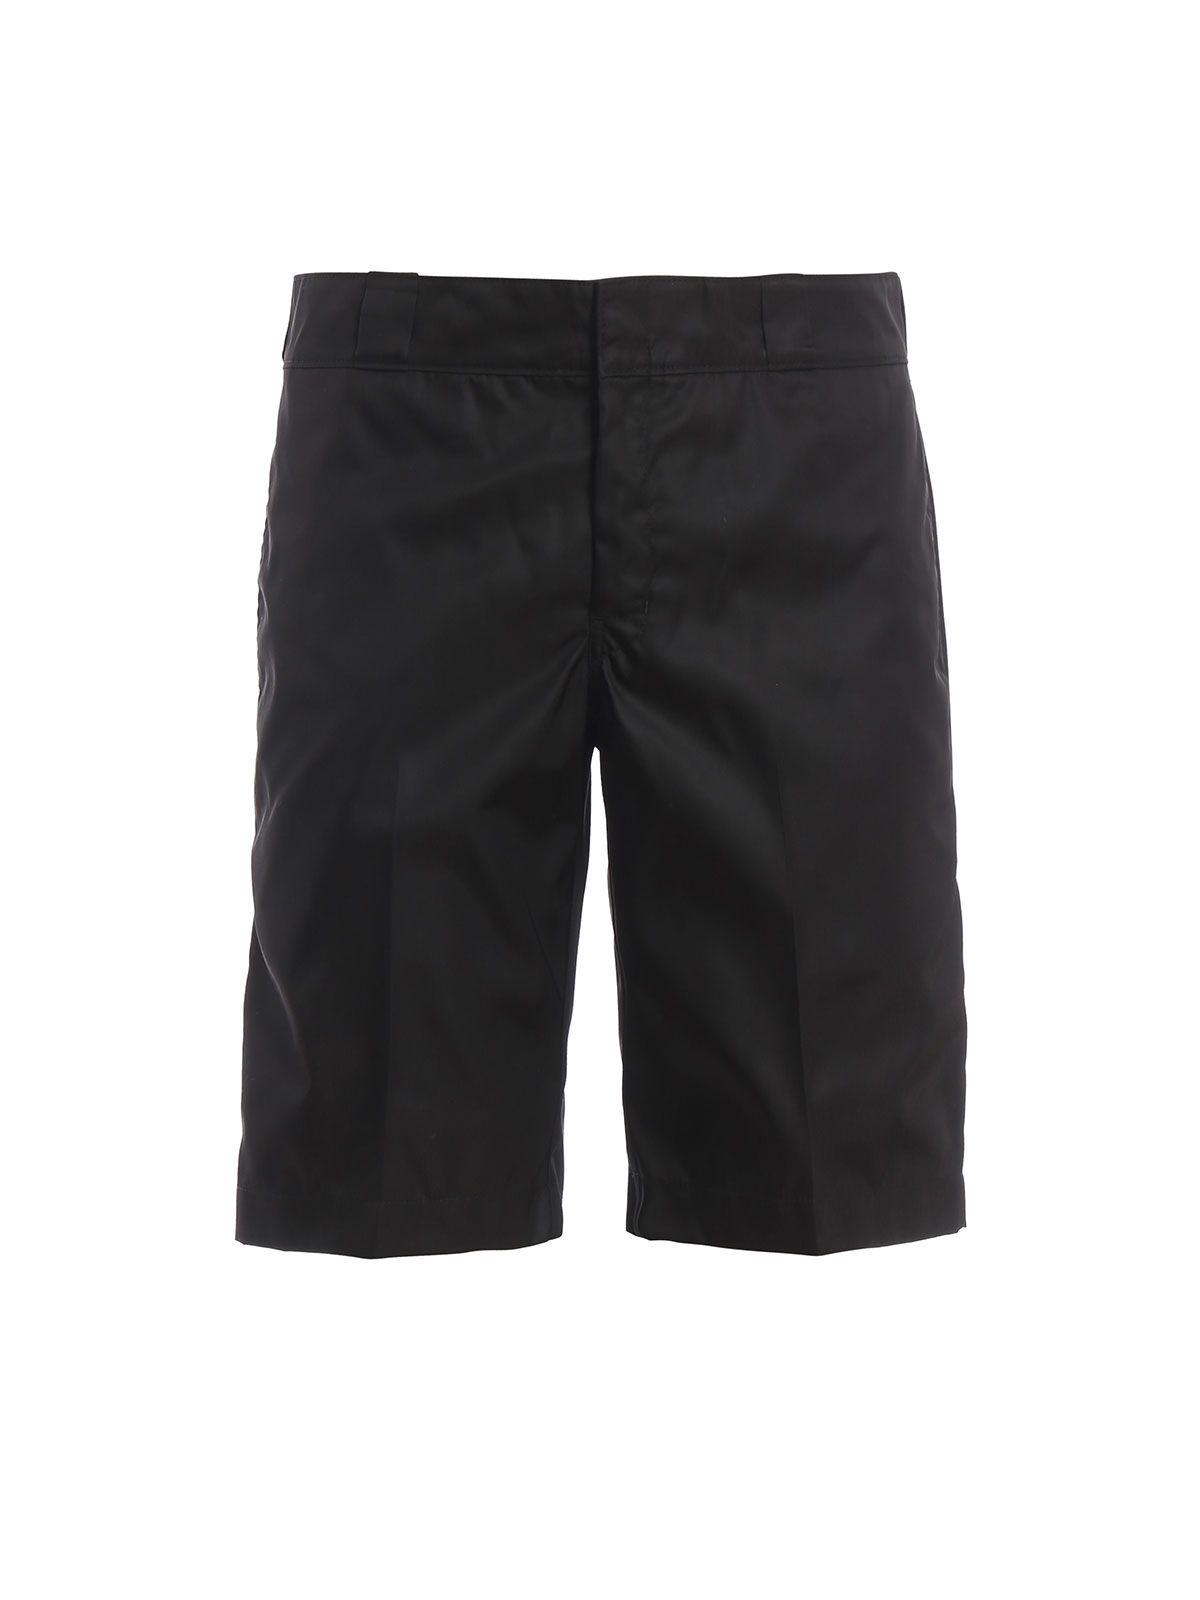 prada black shorts